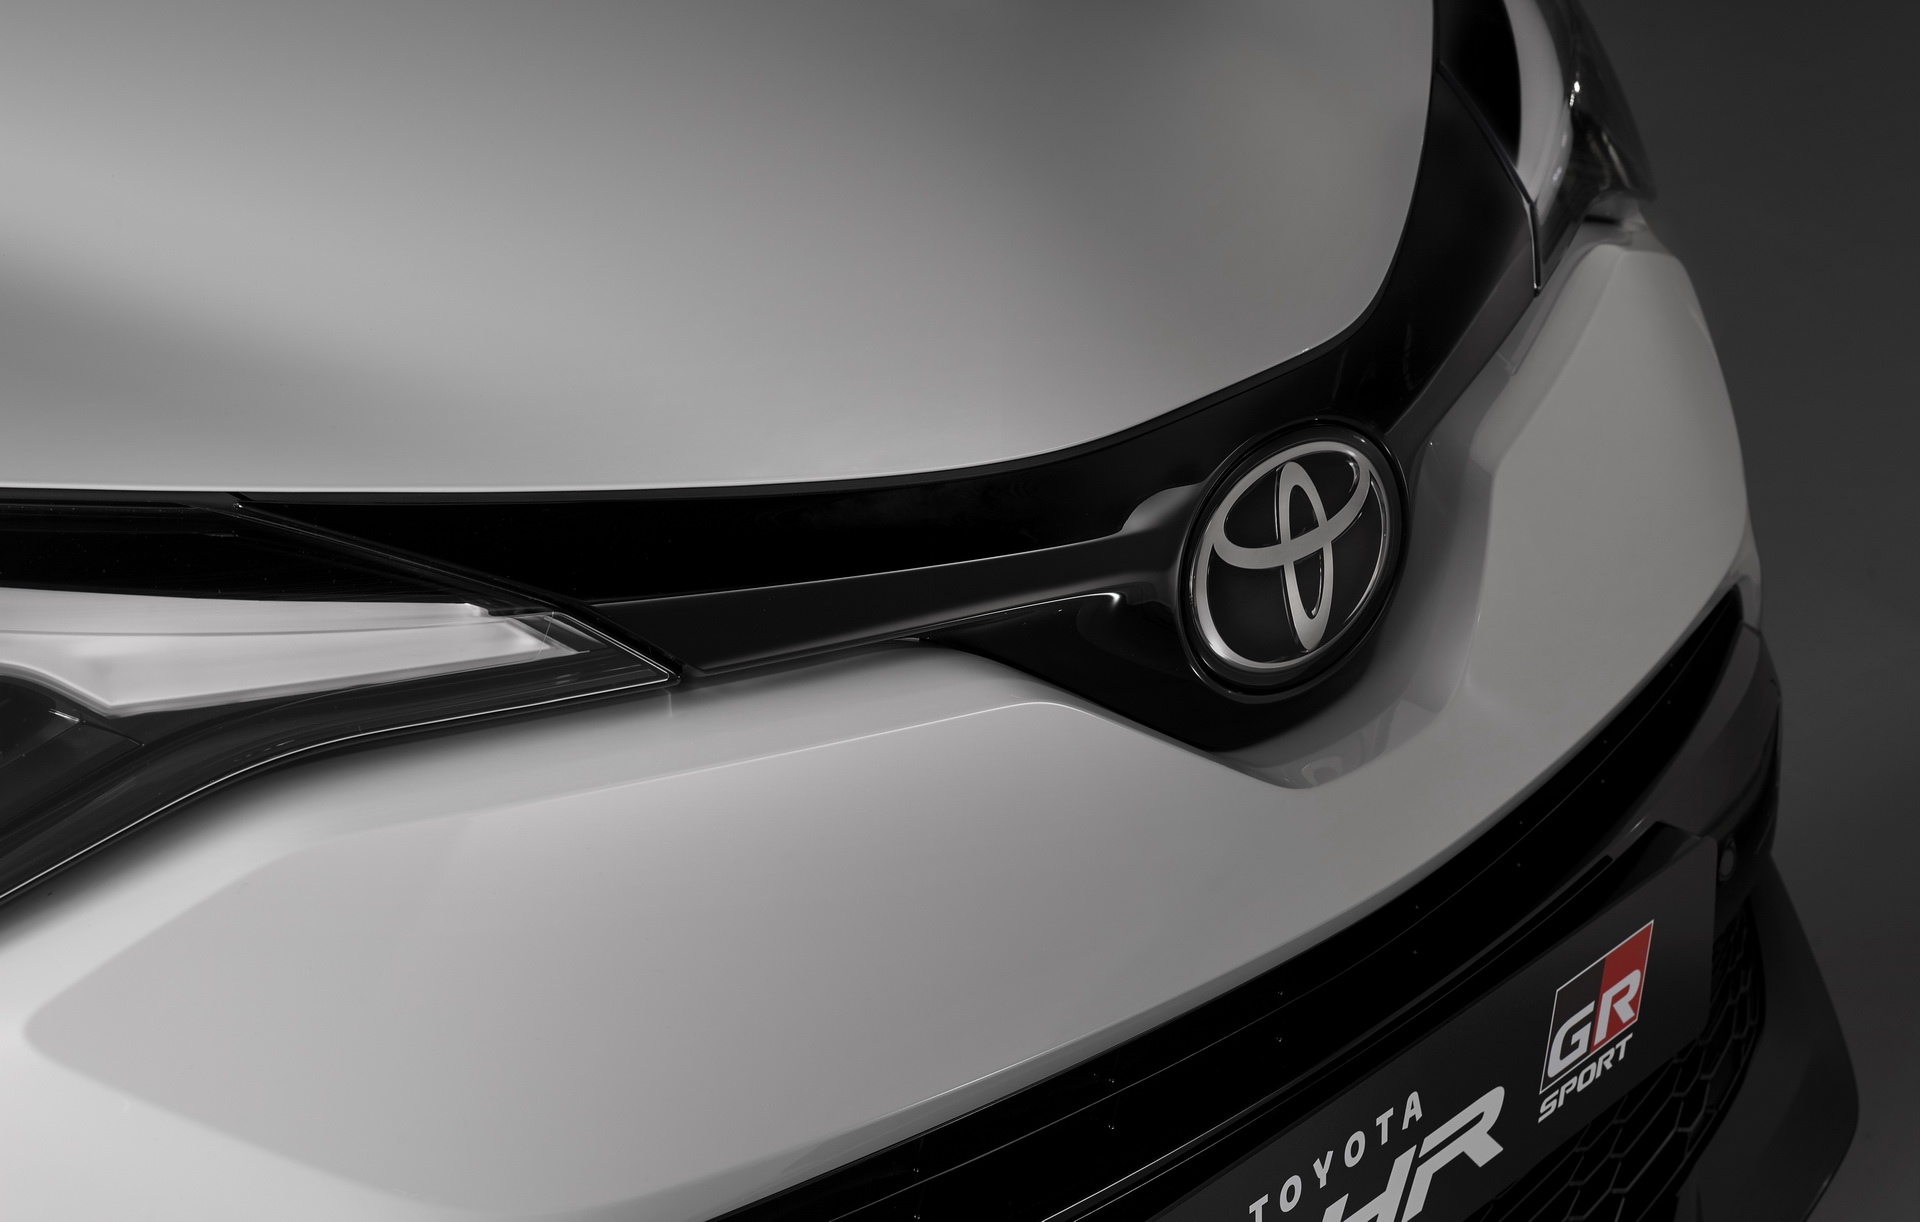 2021 Toyota C-HR GR Sport resim galerisi (10.11.2020)